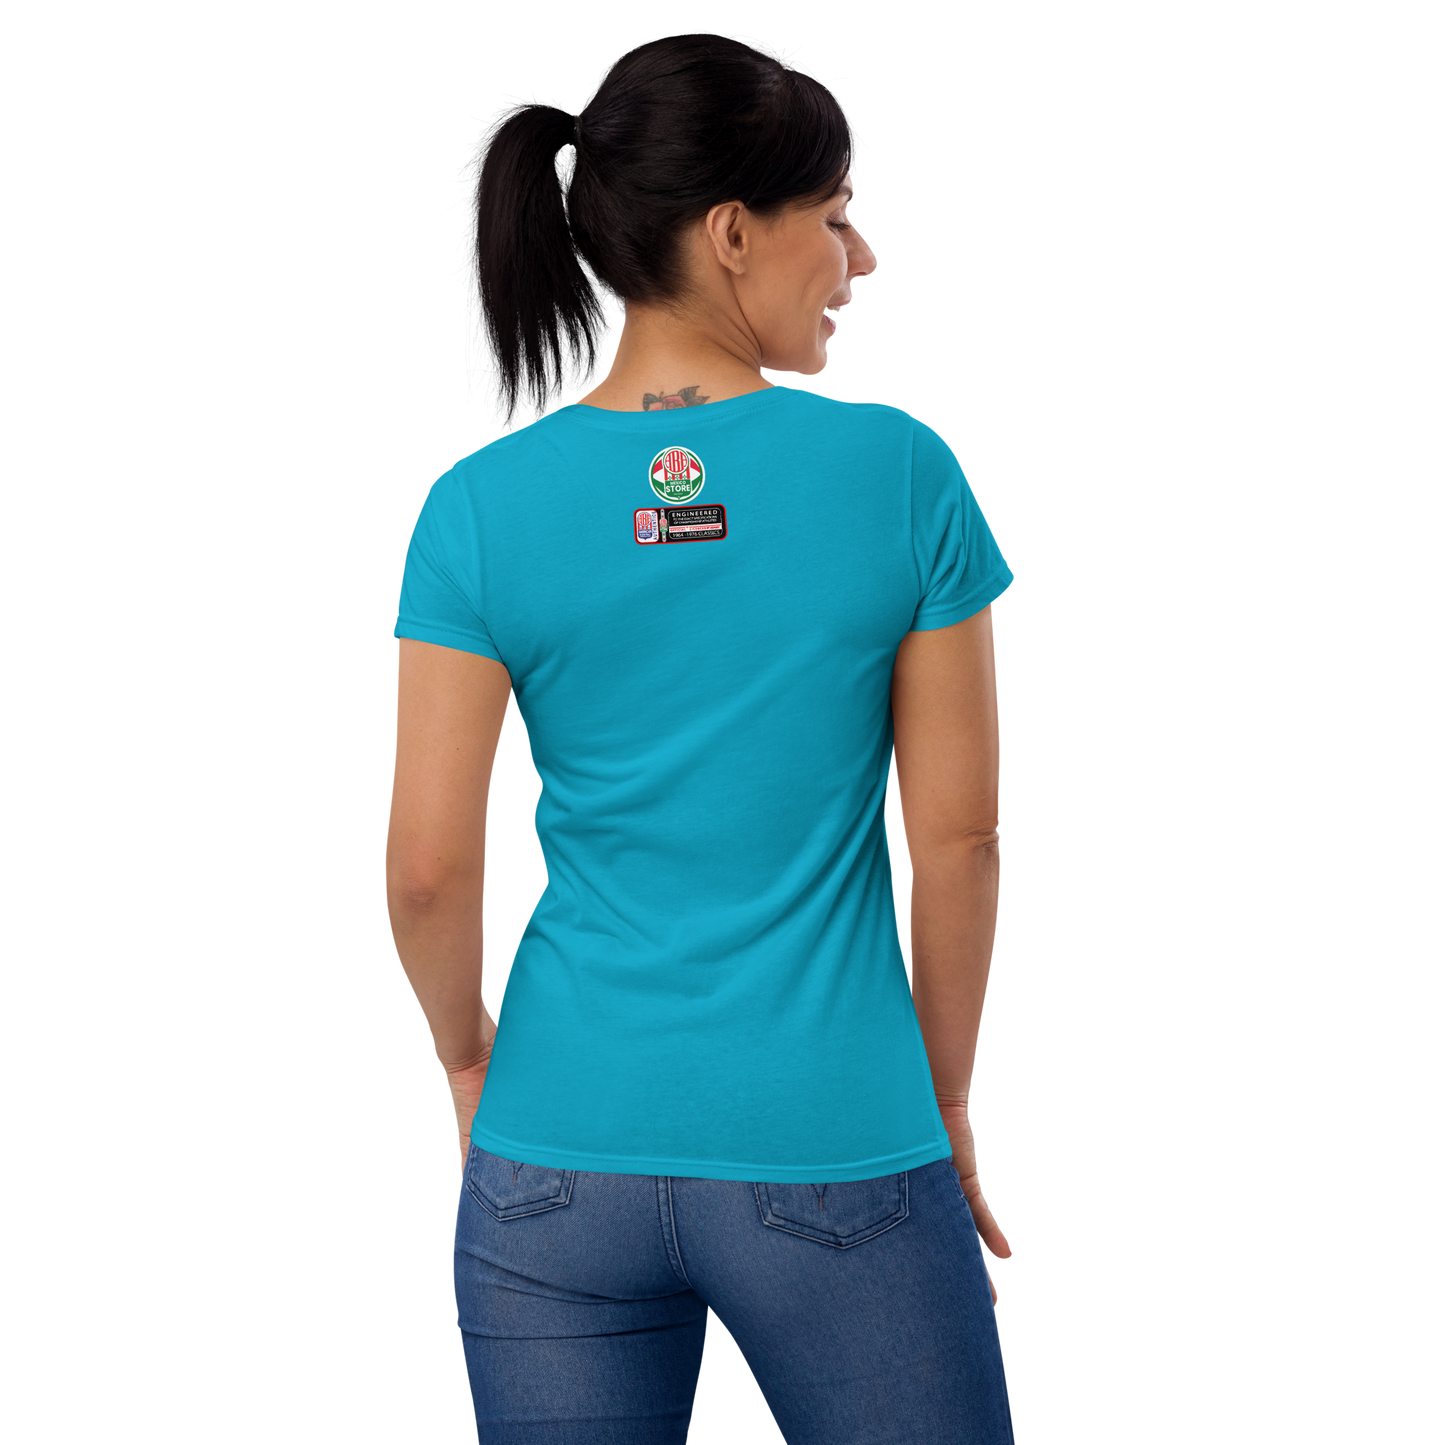 BLUE MARLINS Women's short sleeve t-shirt